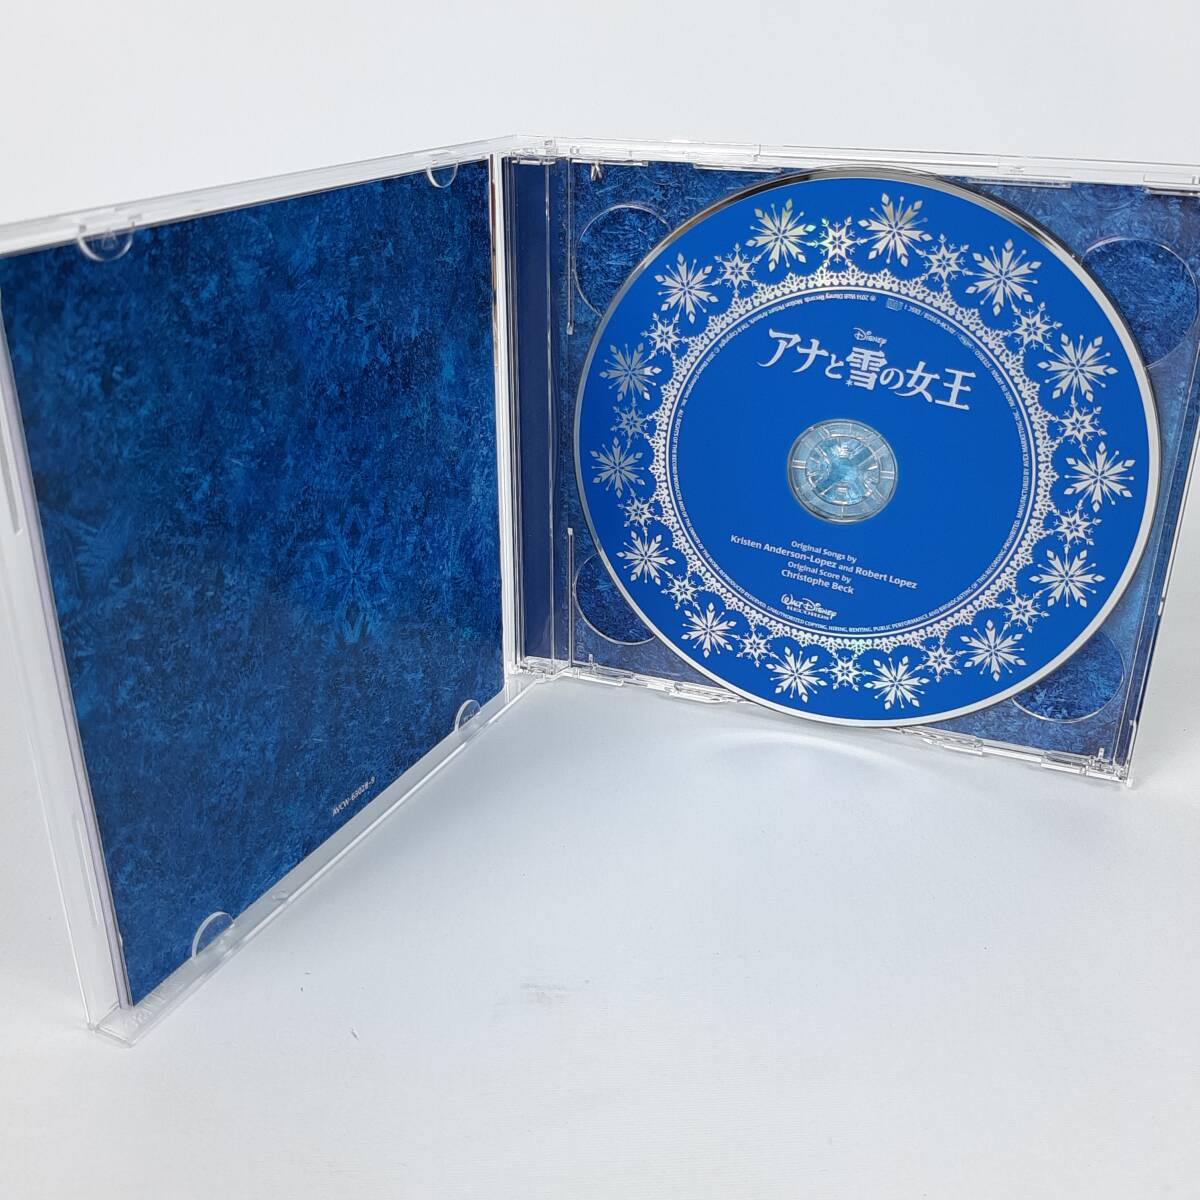 「アナと雪の女王」 オリジナル・サウンドトラックーデラックス・エディションー[初回盤スリーブケース付]_画像3